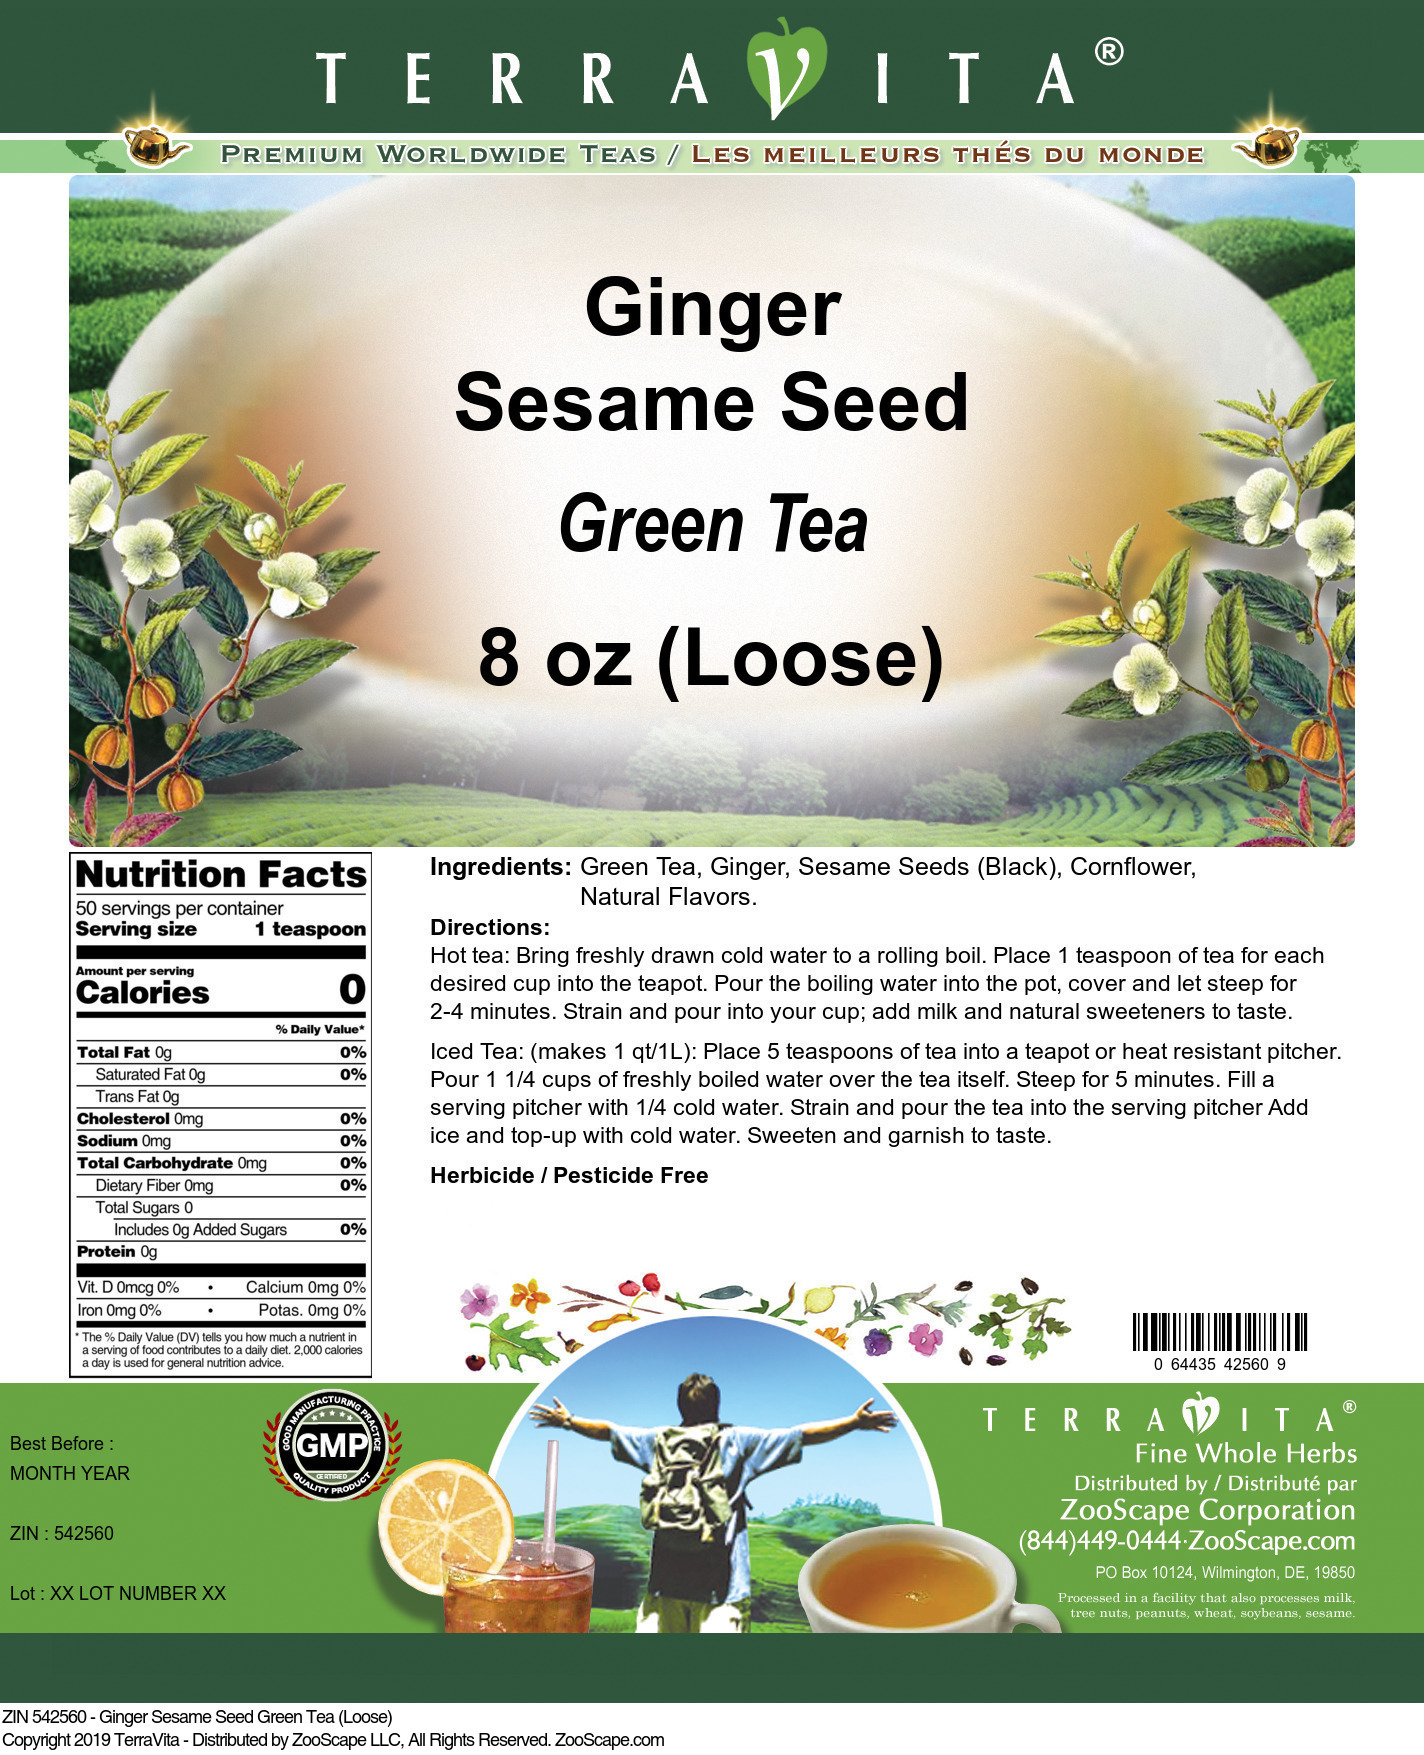 Ginger Sesame Seed Green Tea (Loose) - Label